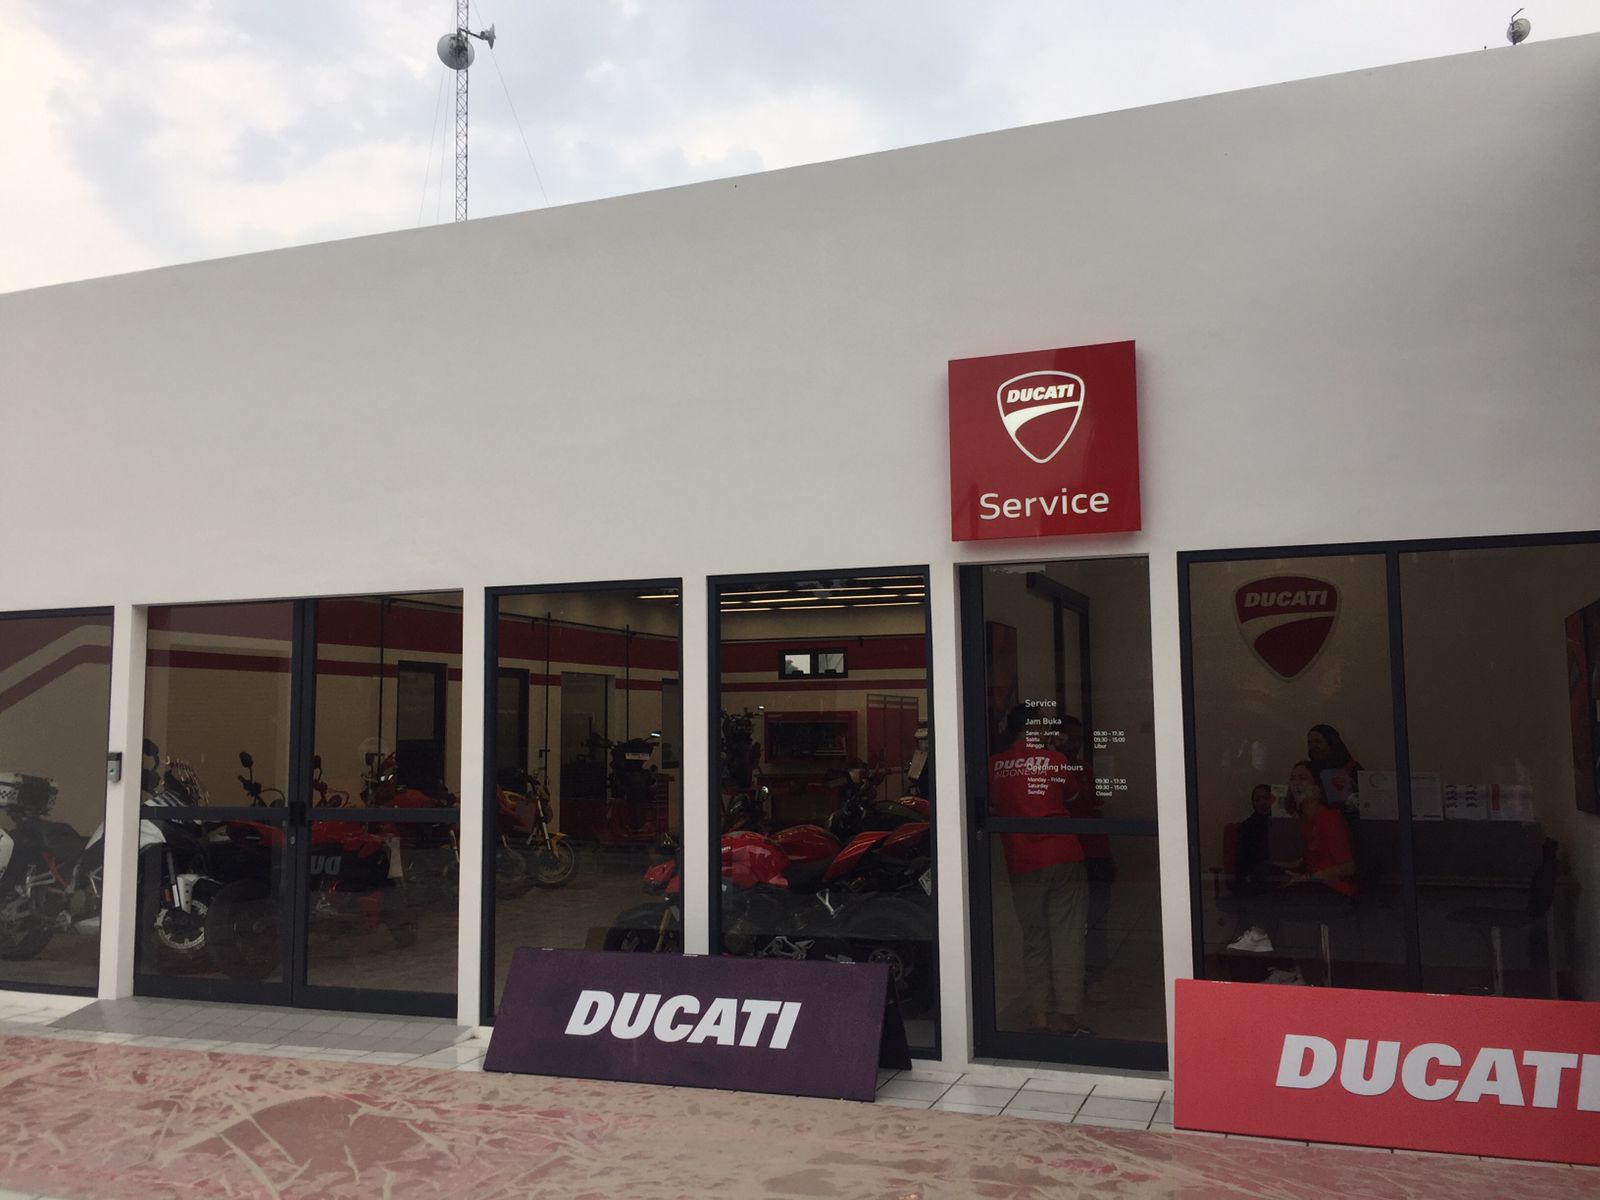 Kini Dipegang Legenda Motor Indonesia, Ducati Resmi Buka Dealer 3S di Indonesia